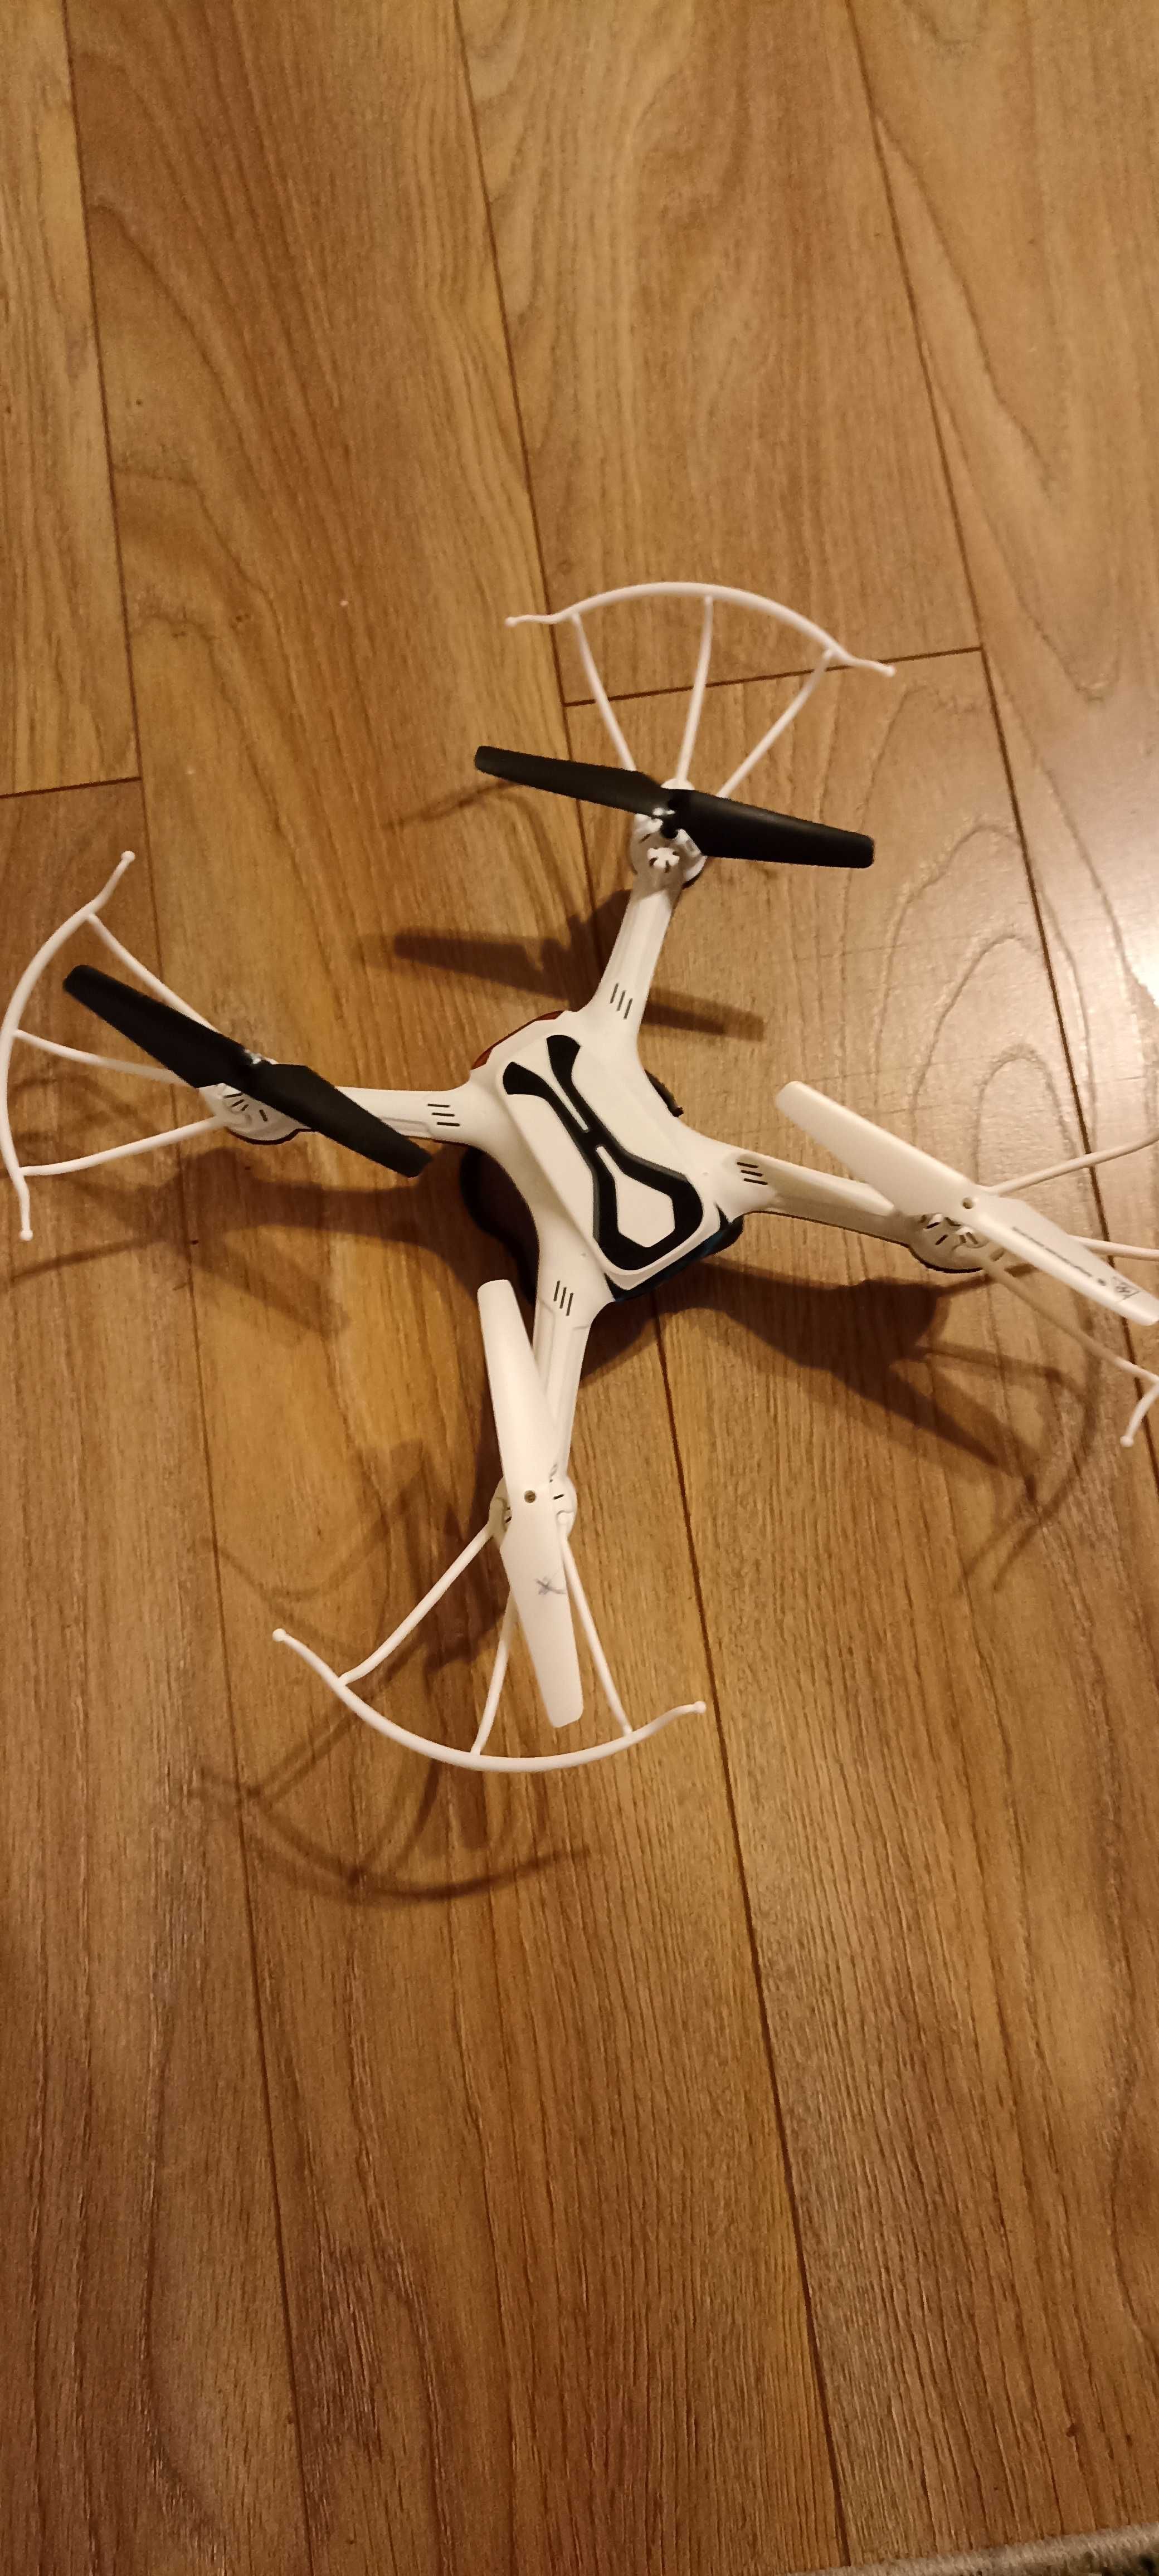 Dron Quadokopter tanio